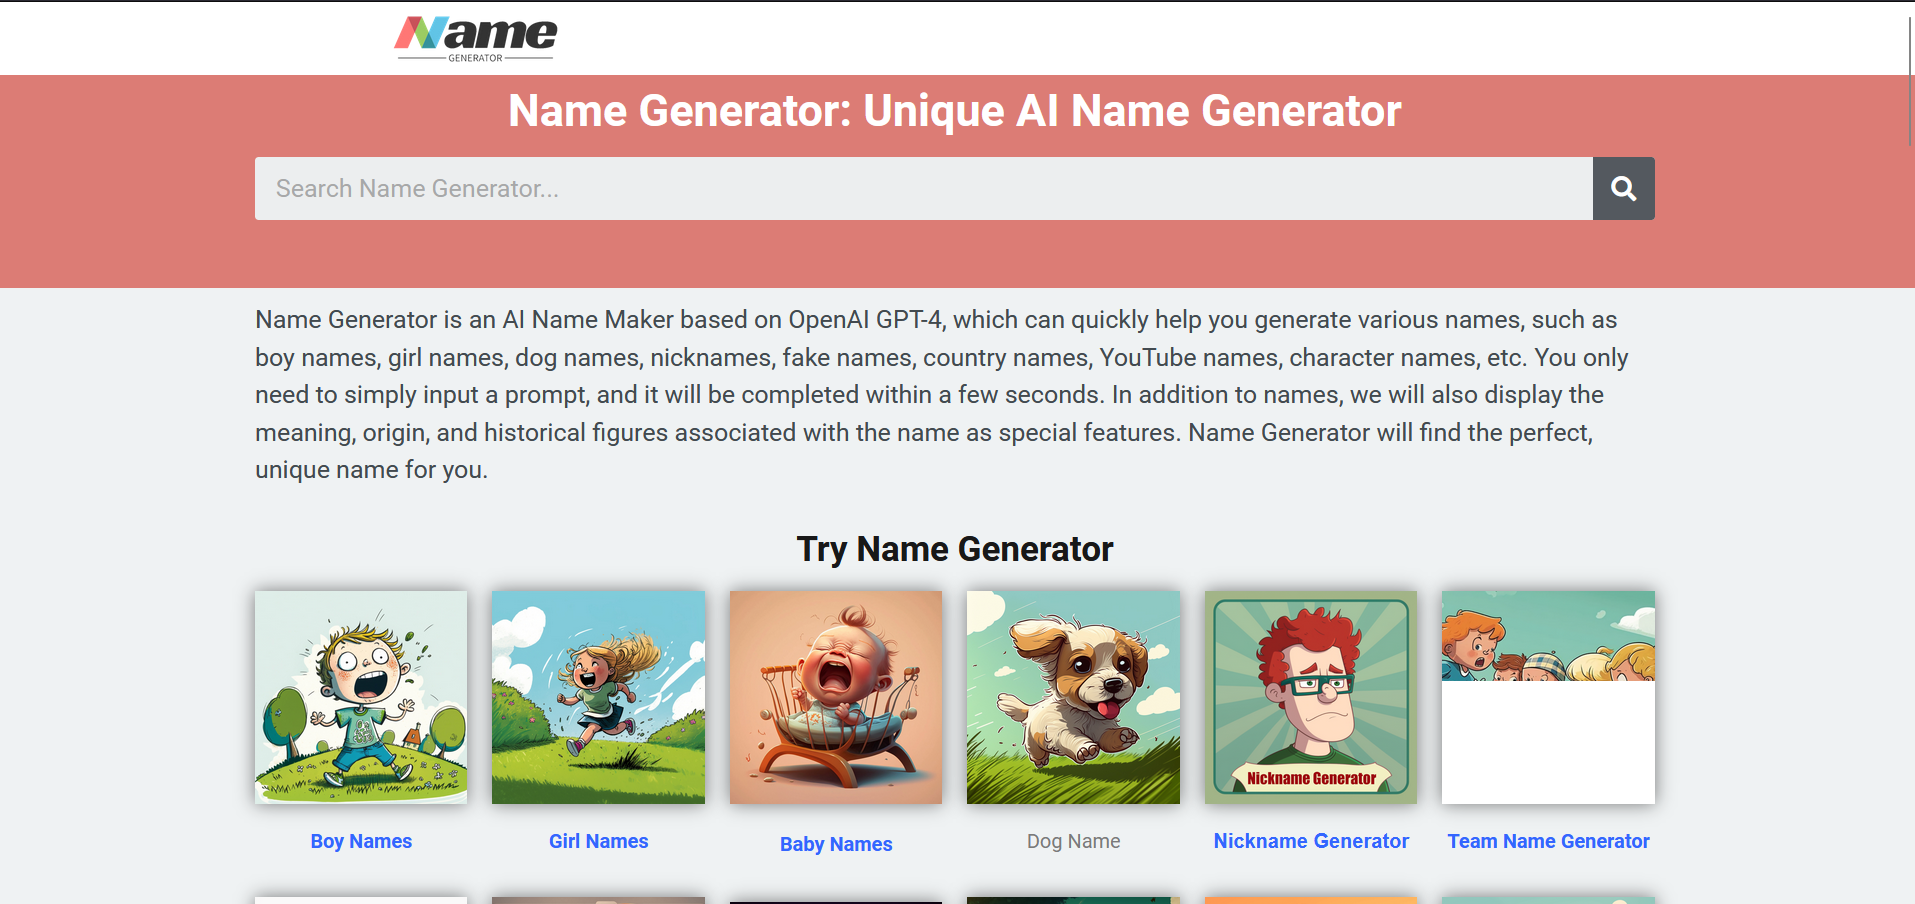 Post: Name Generator